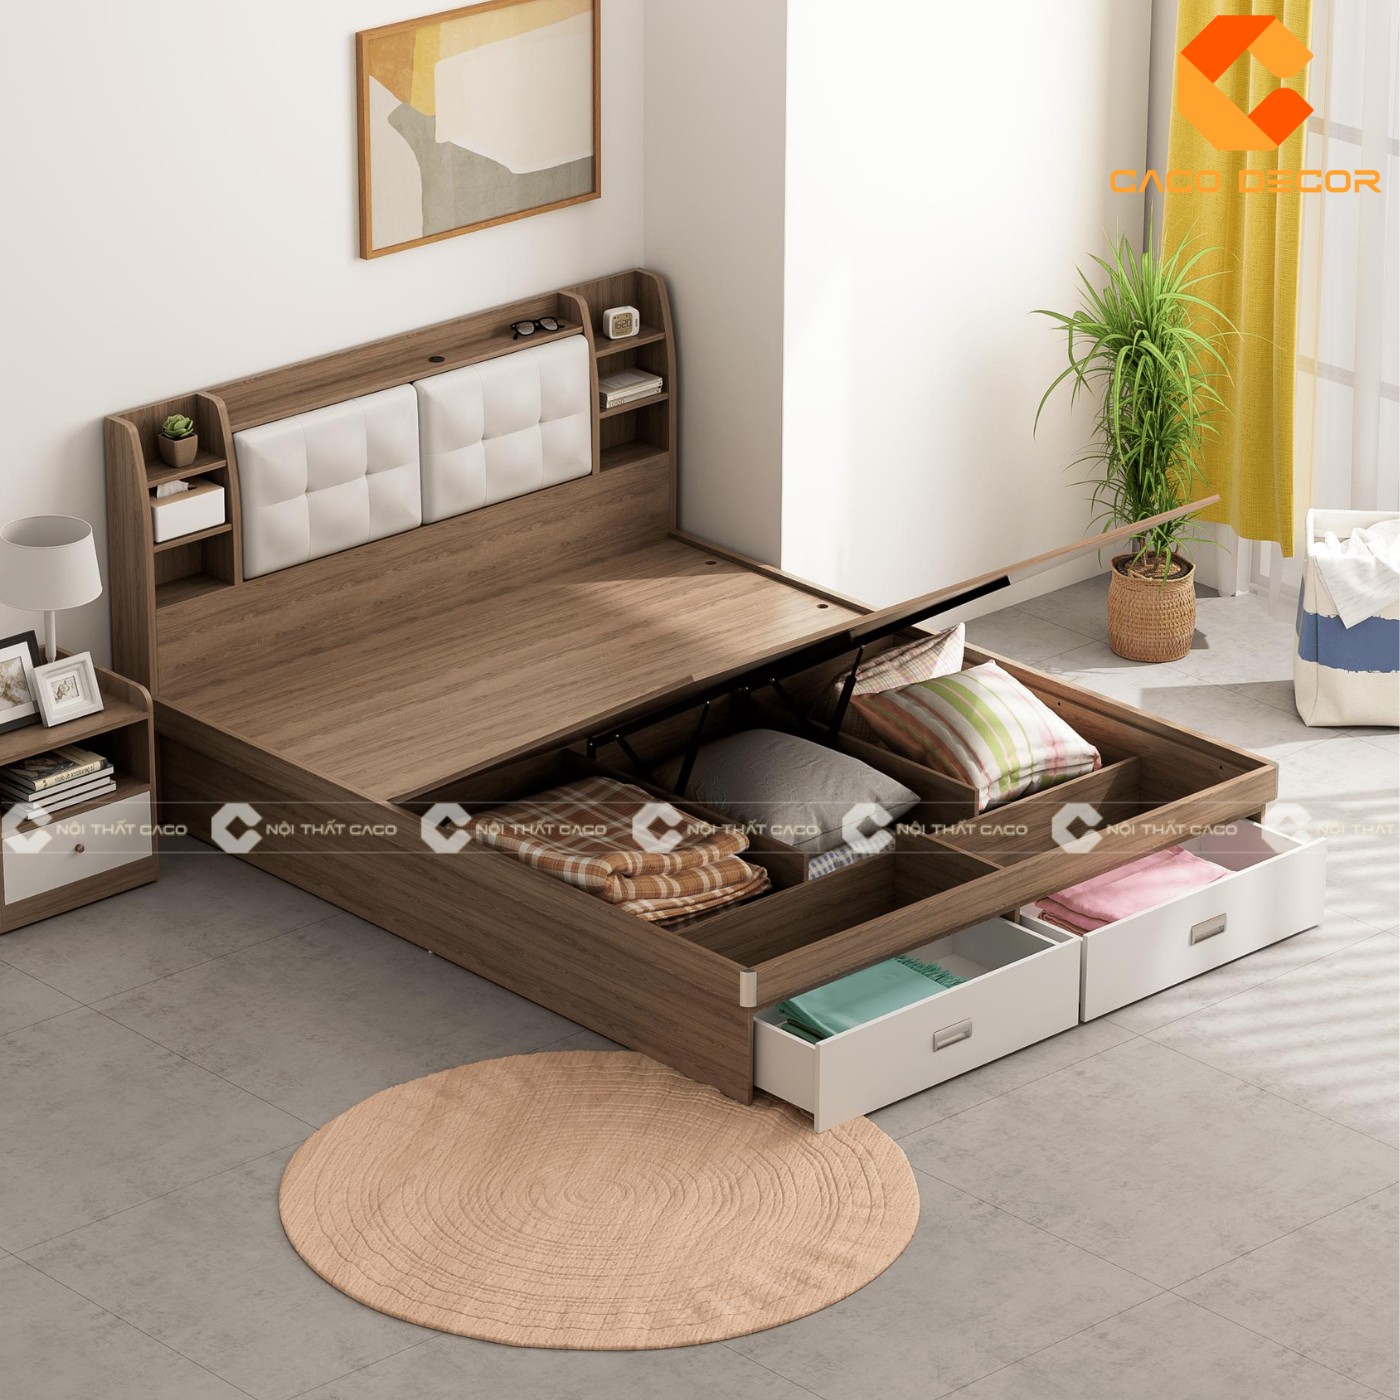 Giường ngủ gỗ công nghiệp đẹp, chất lượng với giá tốt nhất thị trường 8